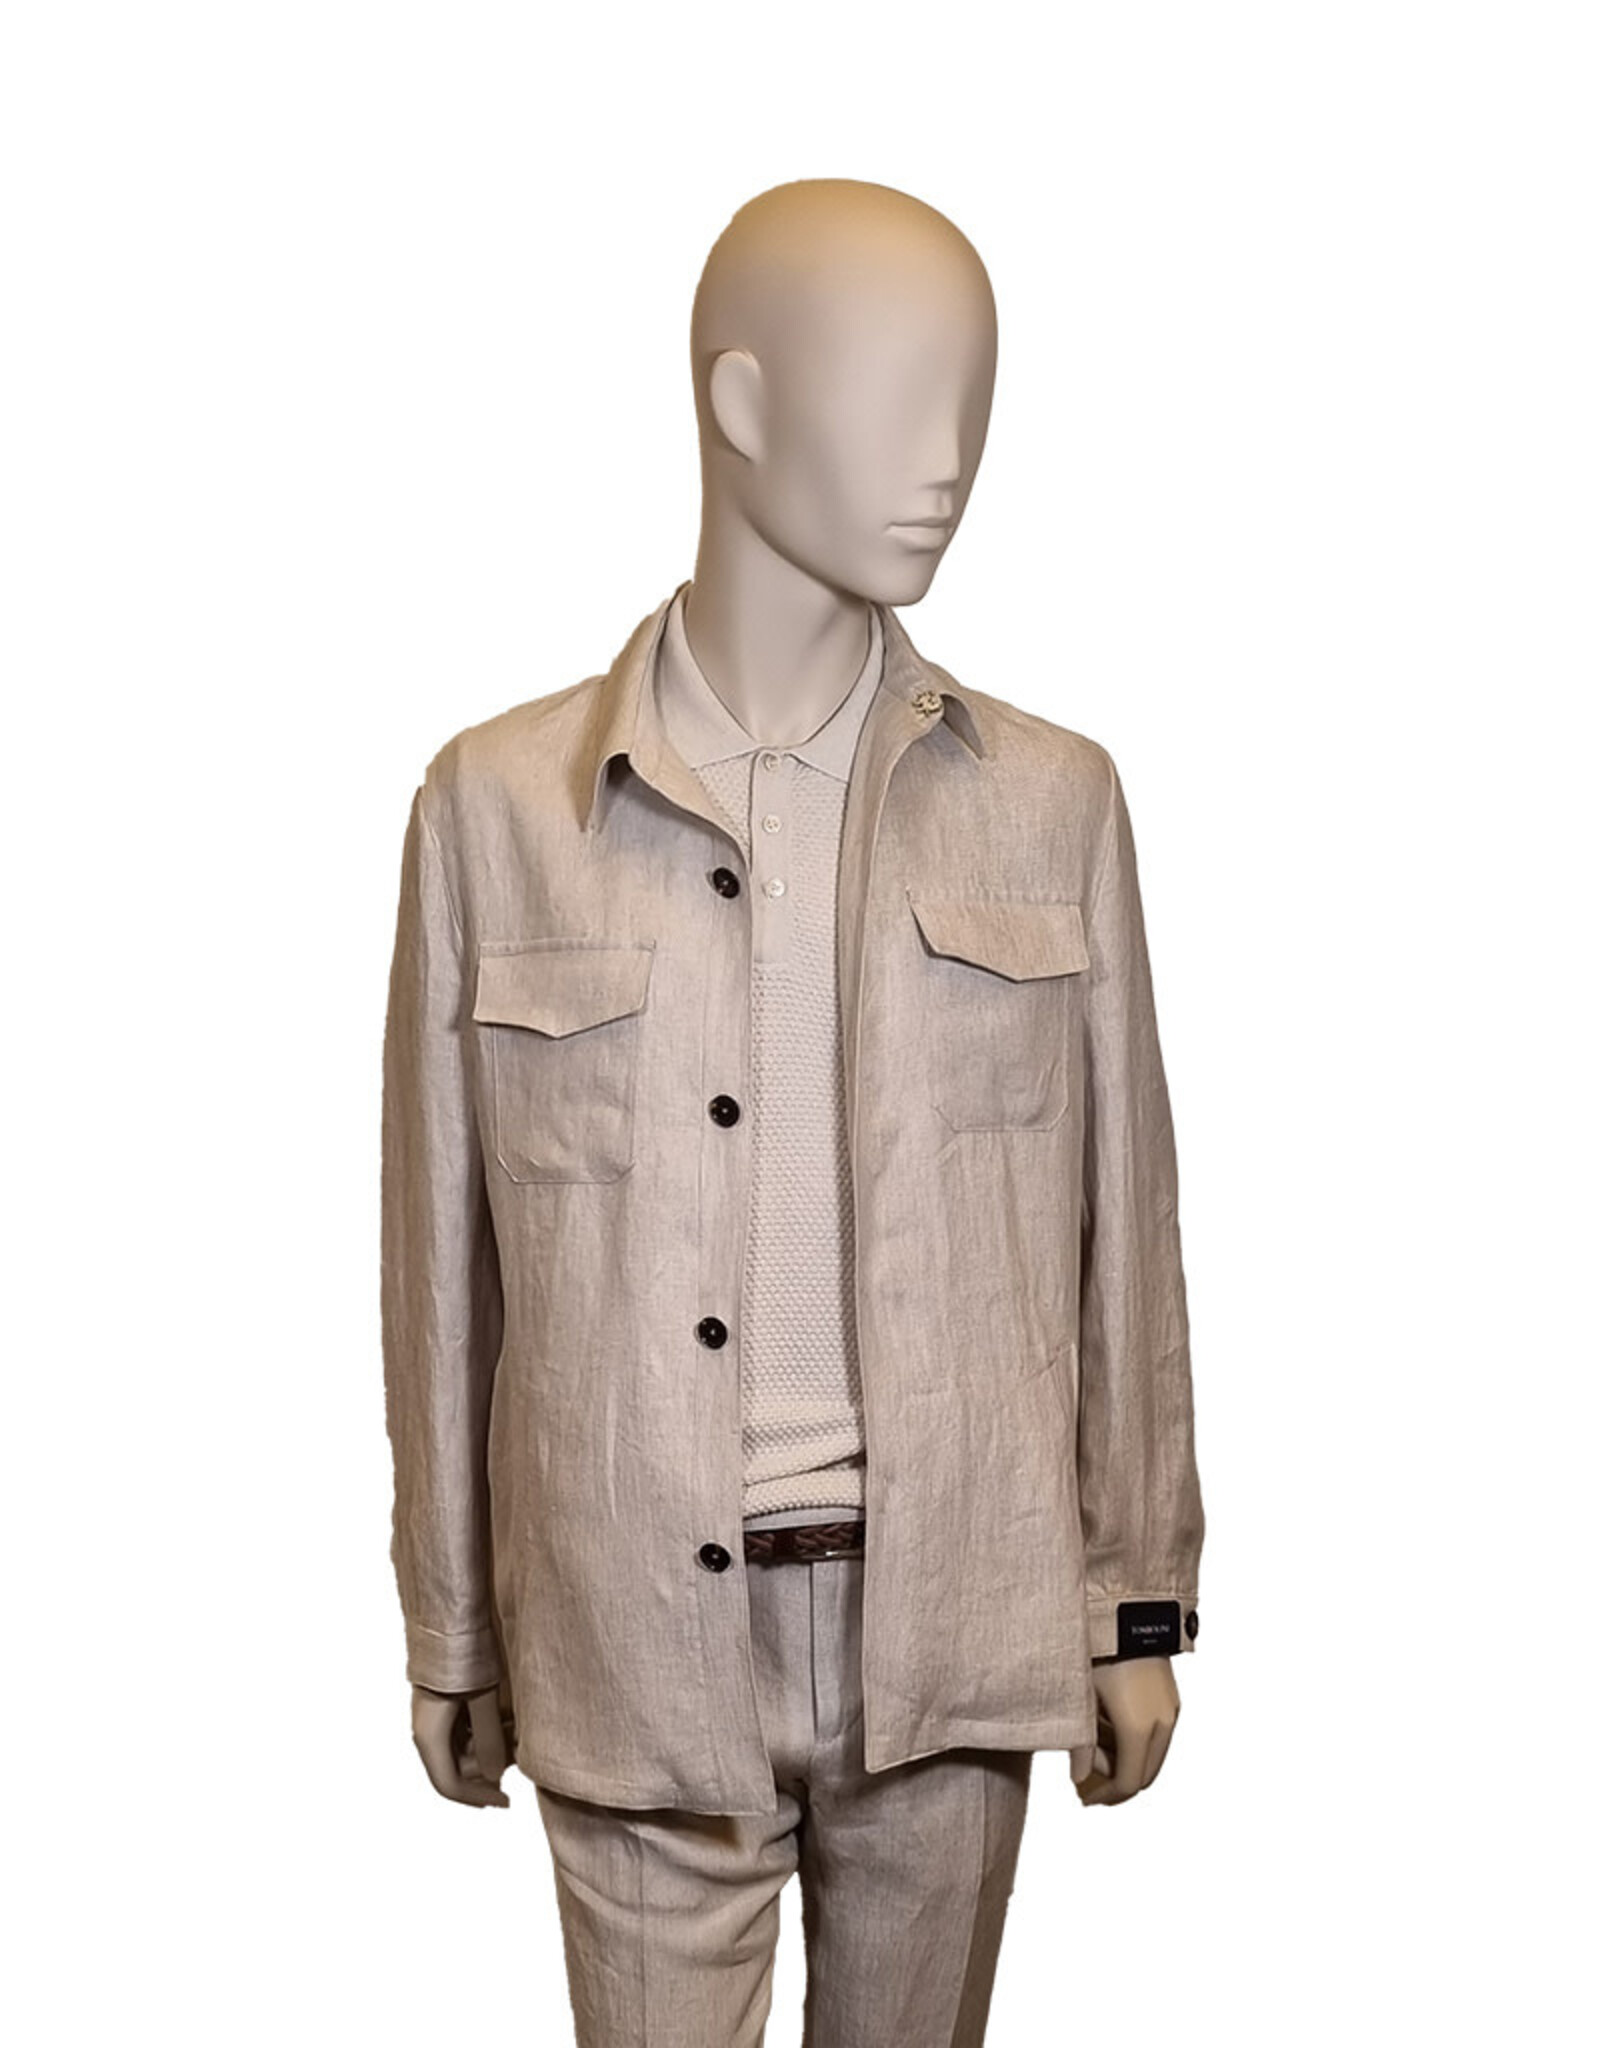 Tombolini Tombolini jacket linen beige Zero Gravity